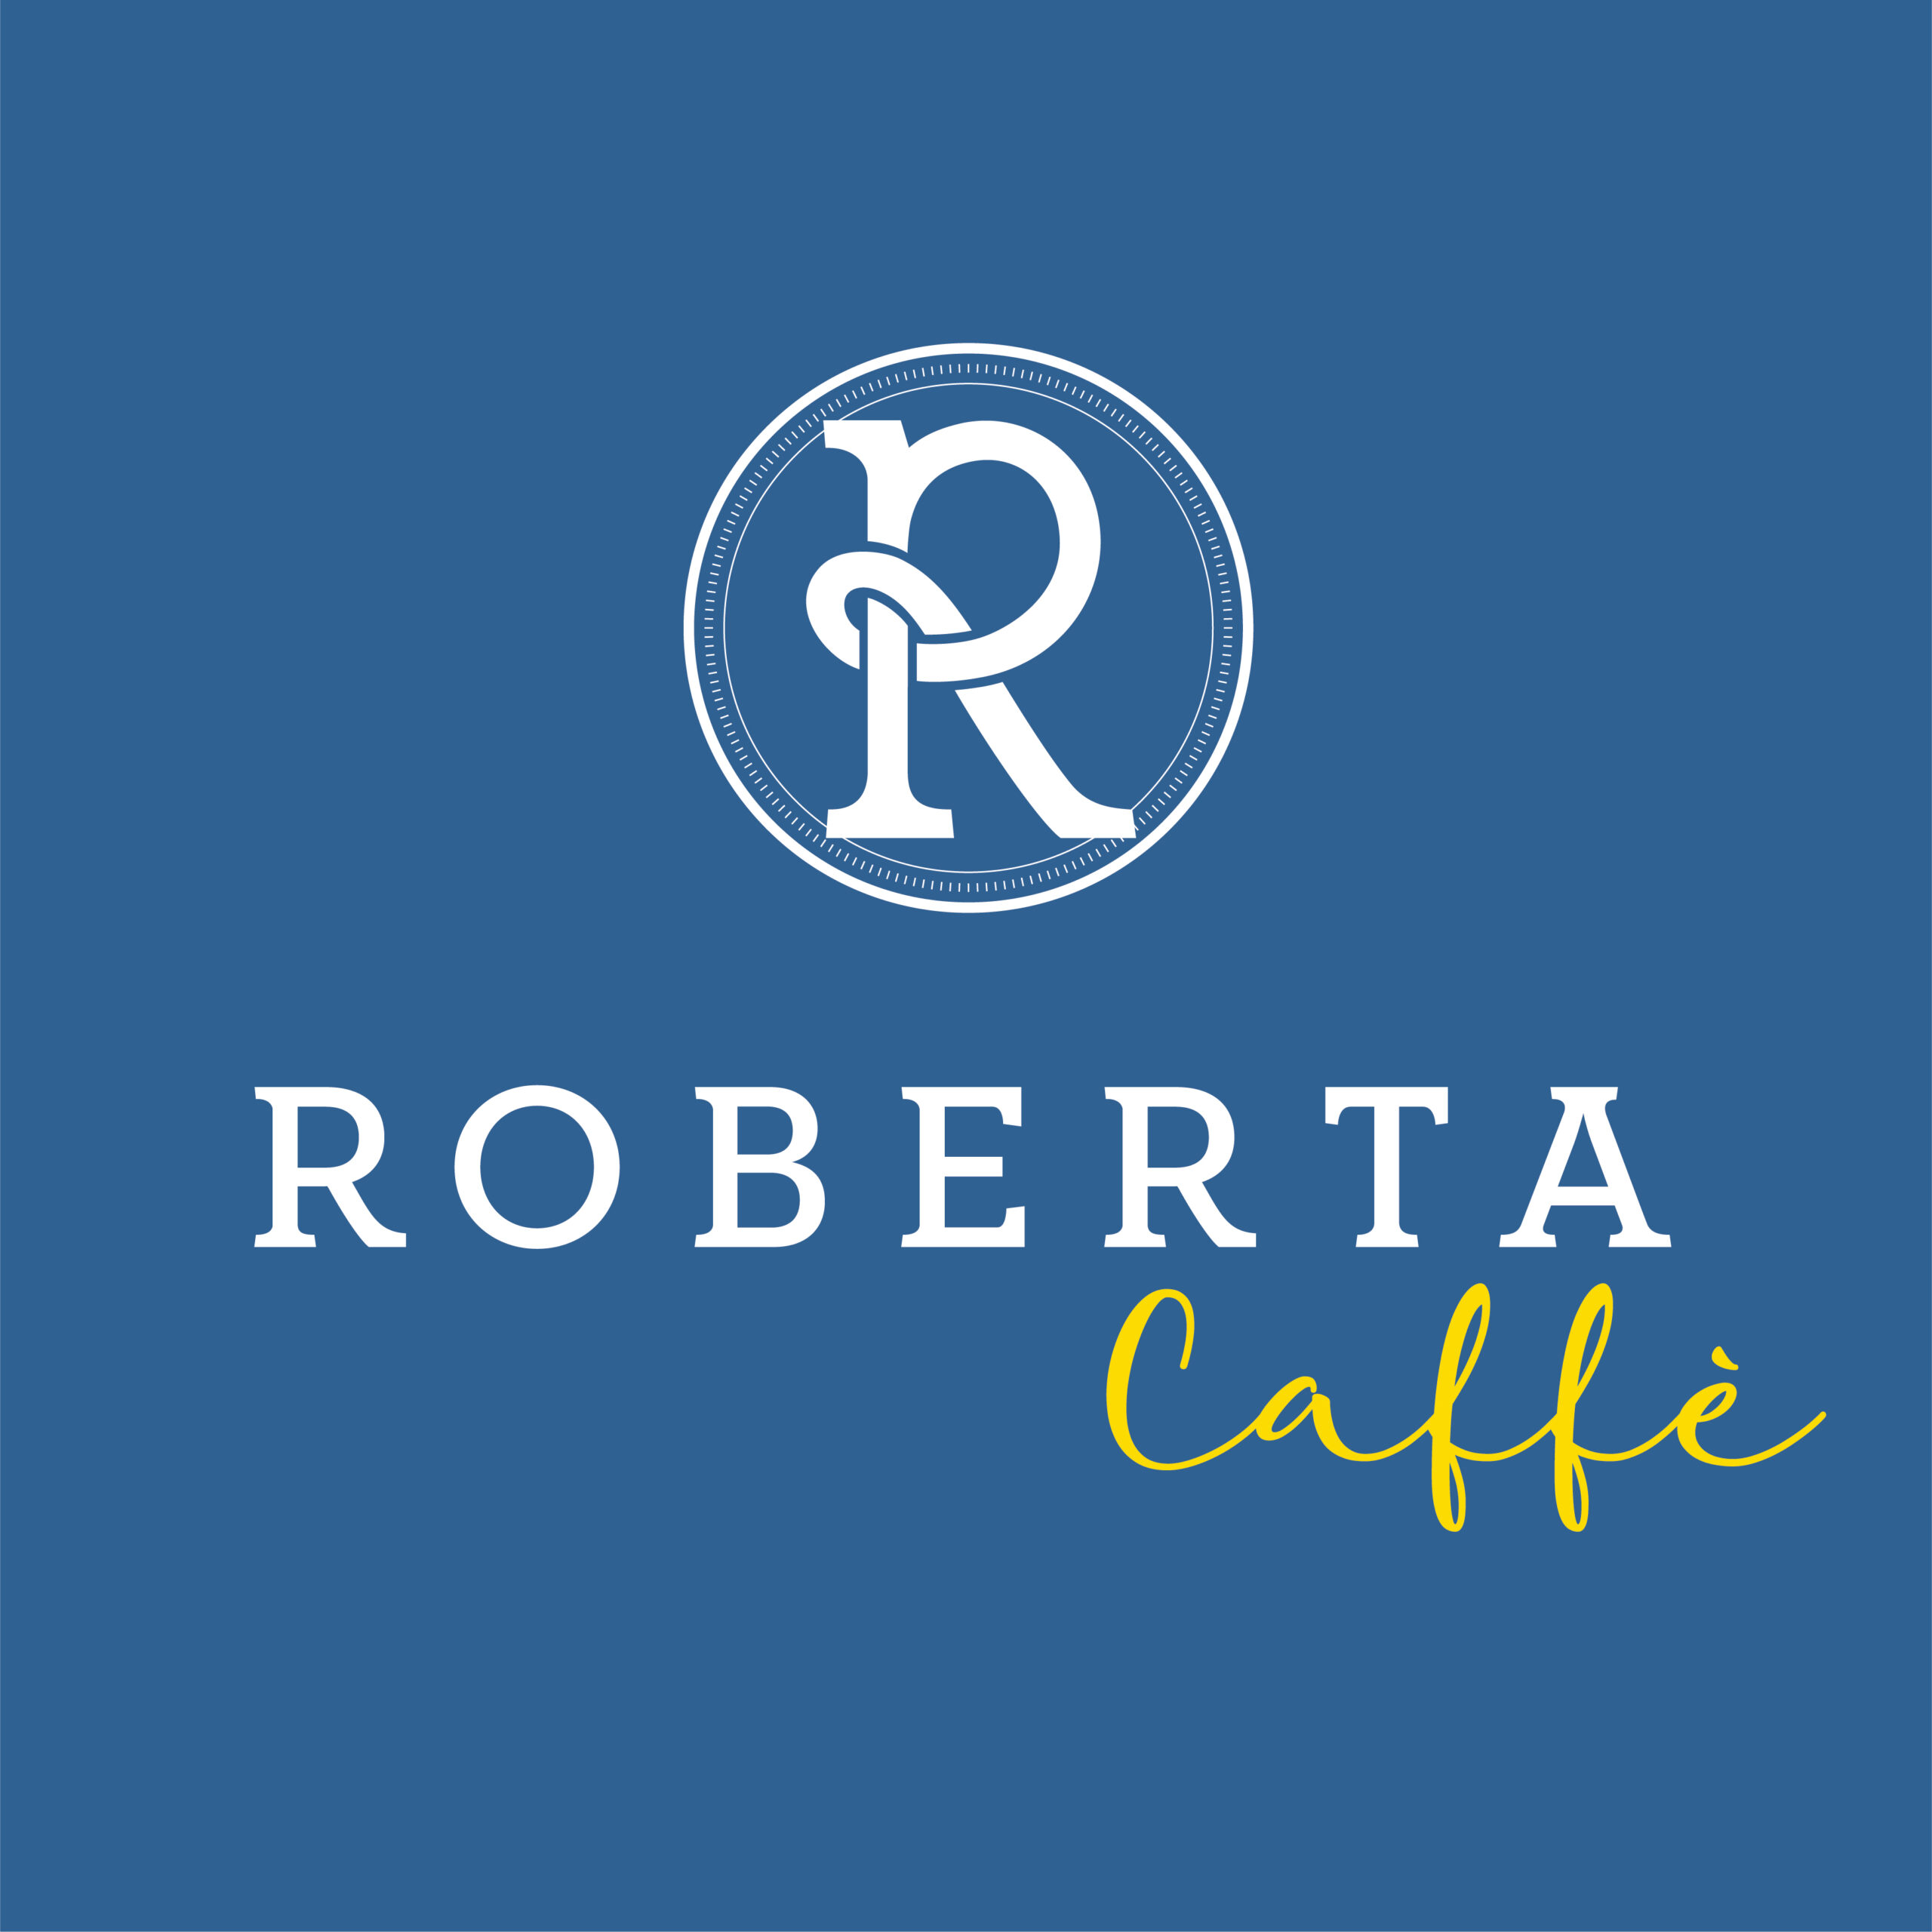 Roberta Caffe-01 Logos